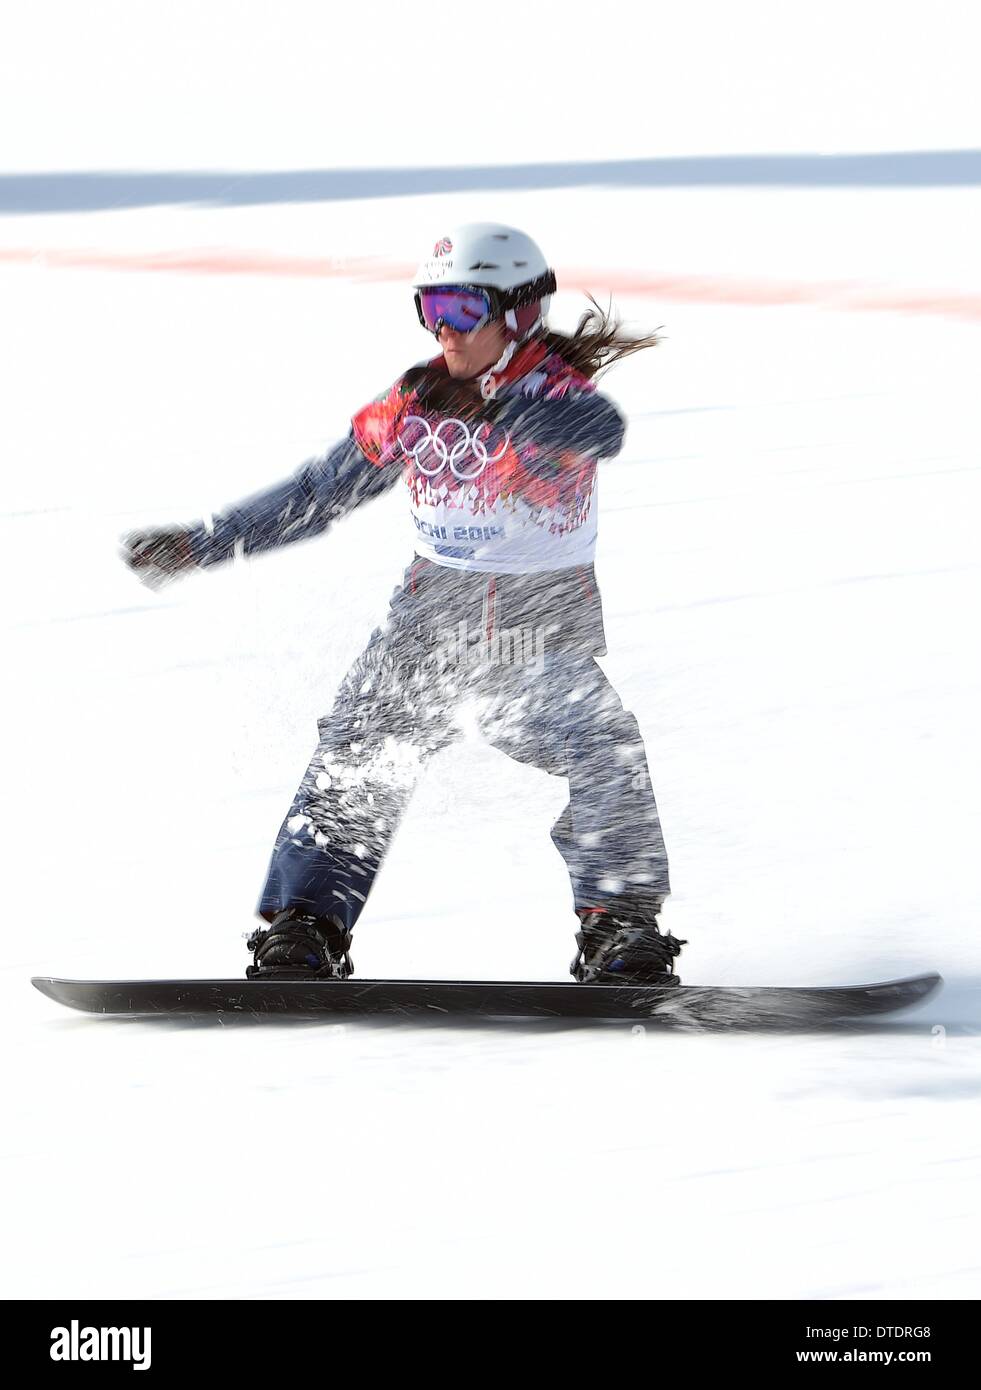 Zoe Gillings (GBR) qualifiziert für das Viertelfinale. Womens Snowbboard Cross - Rosa Khutor Extreme Park - Sotschi - Russland - 16.02.2014 Stockfoto